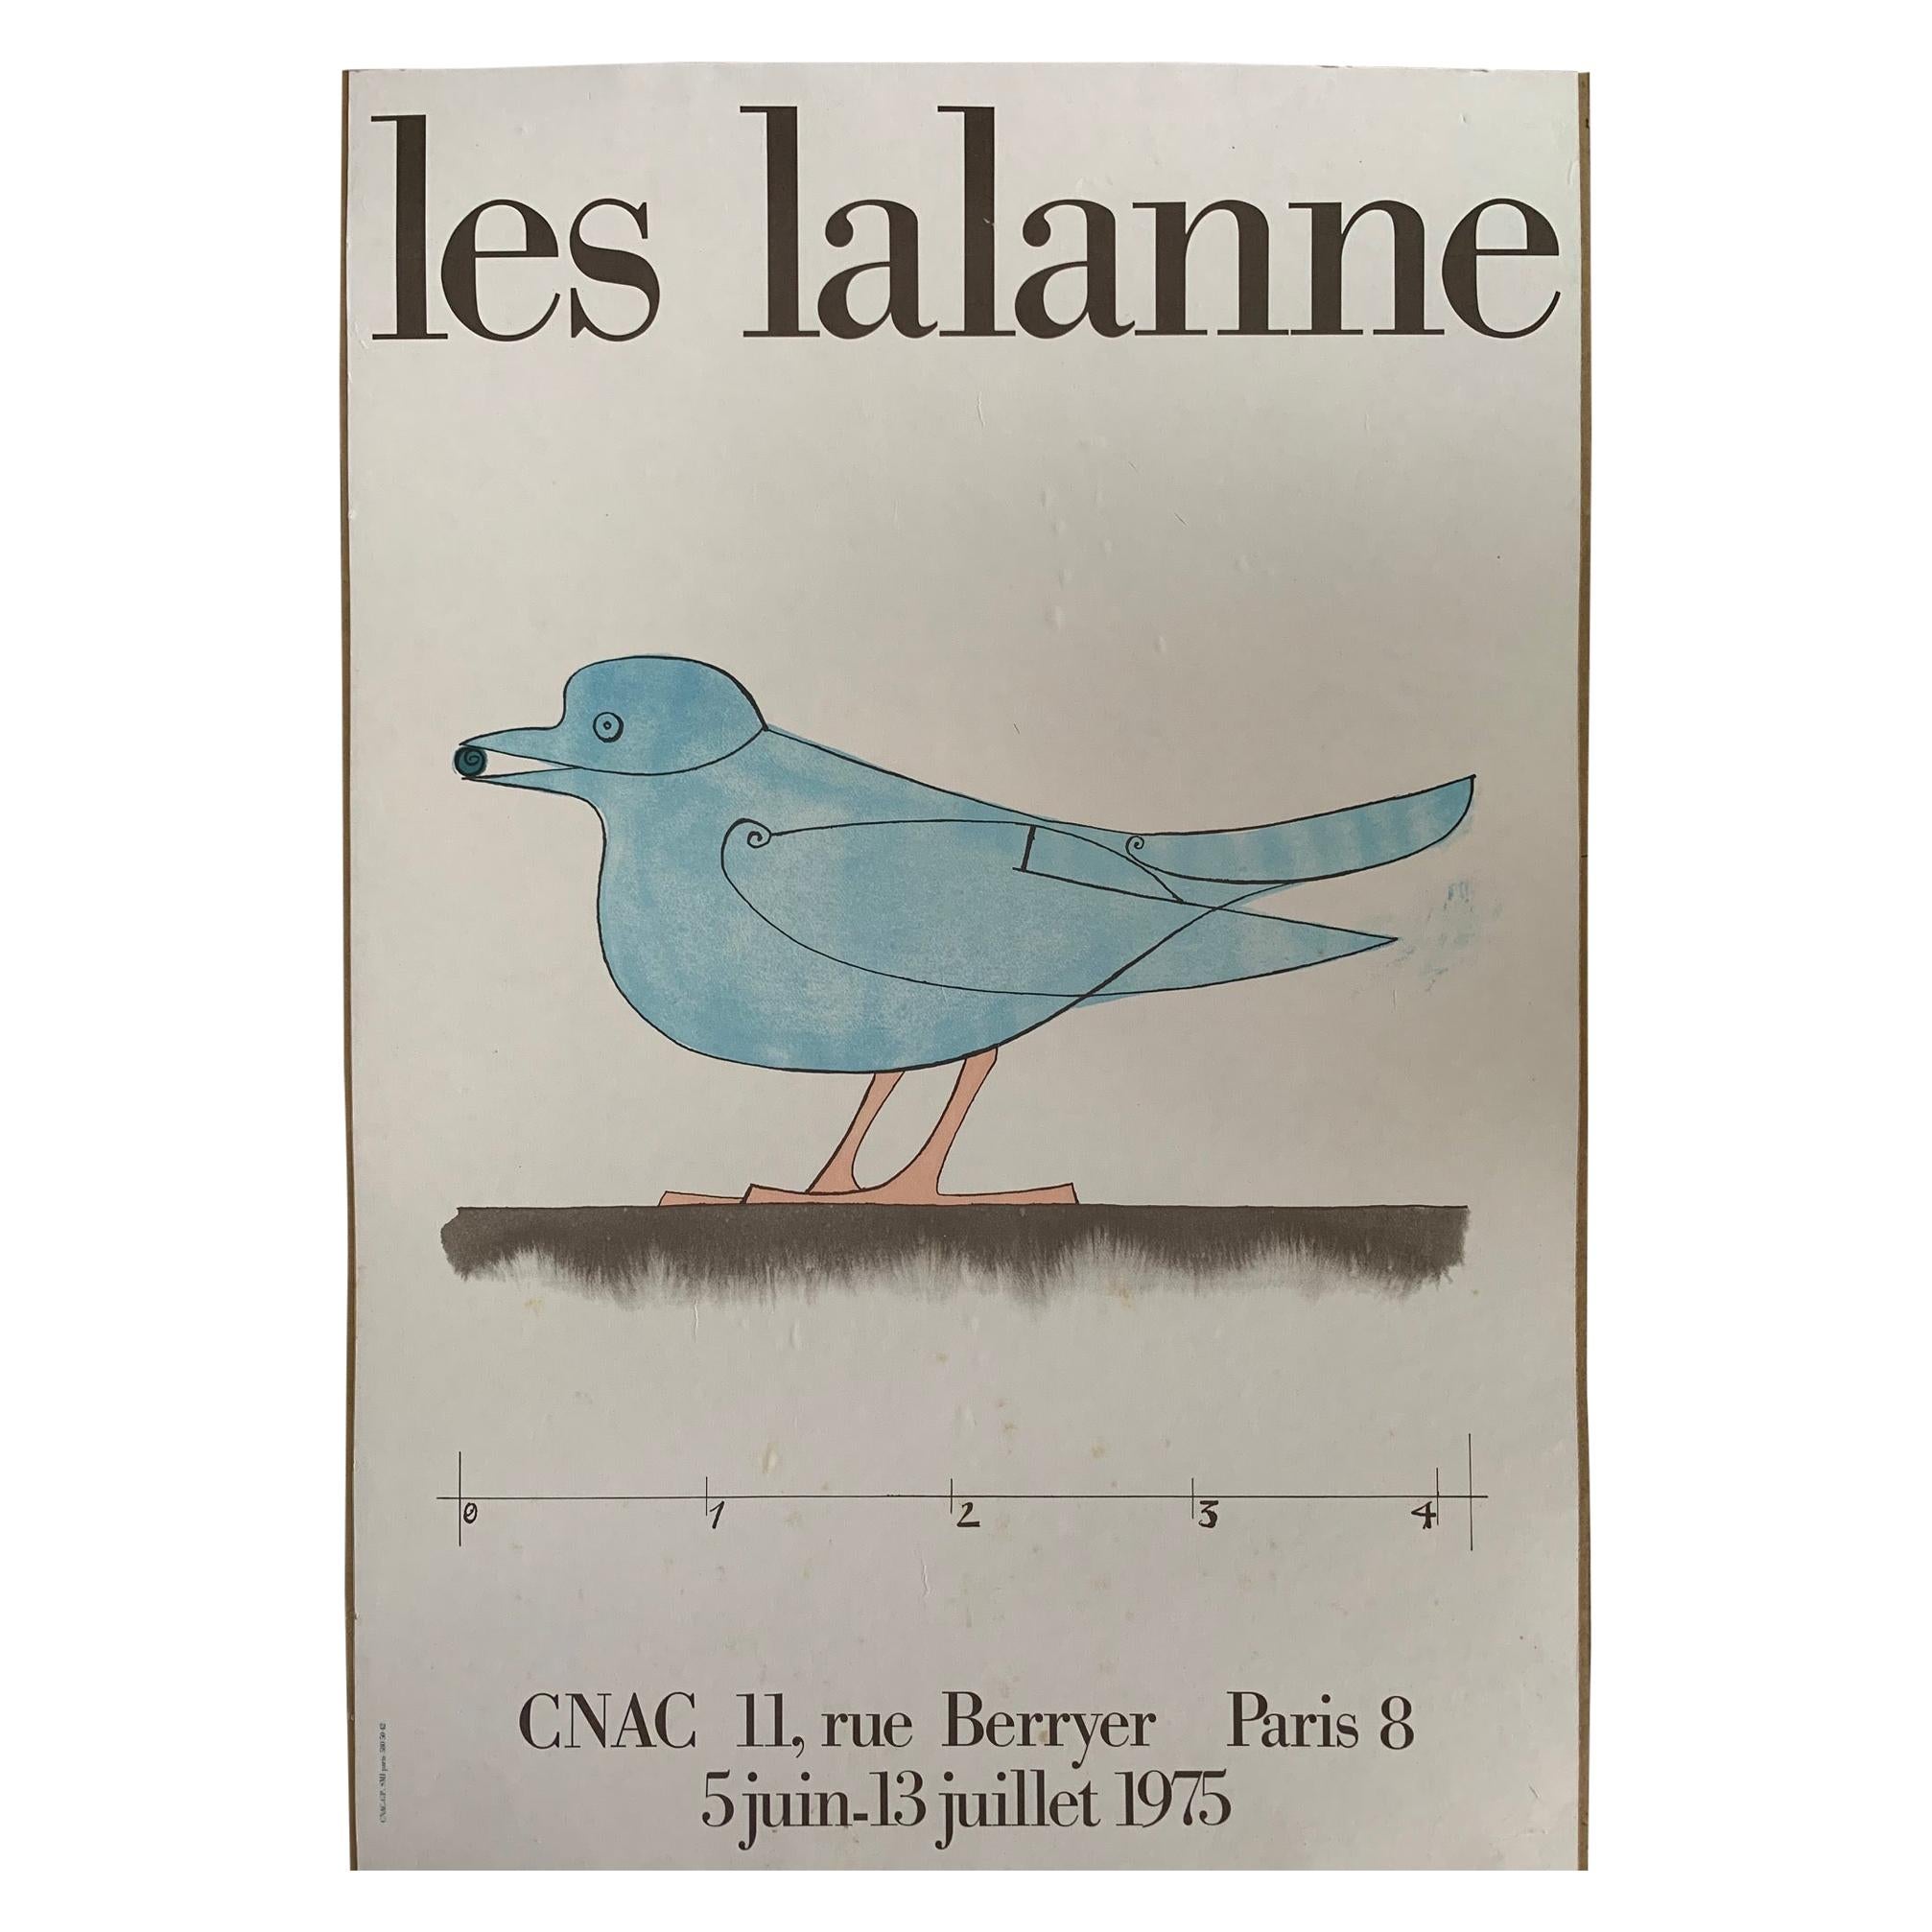 Les Lalanne Poster Paris CNAC Exhibit, 1975